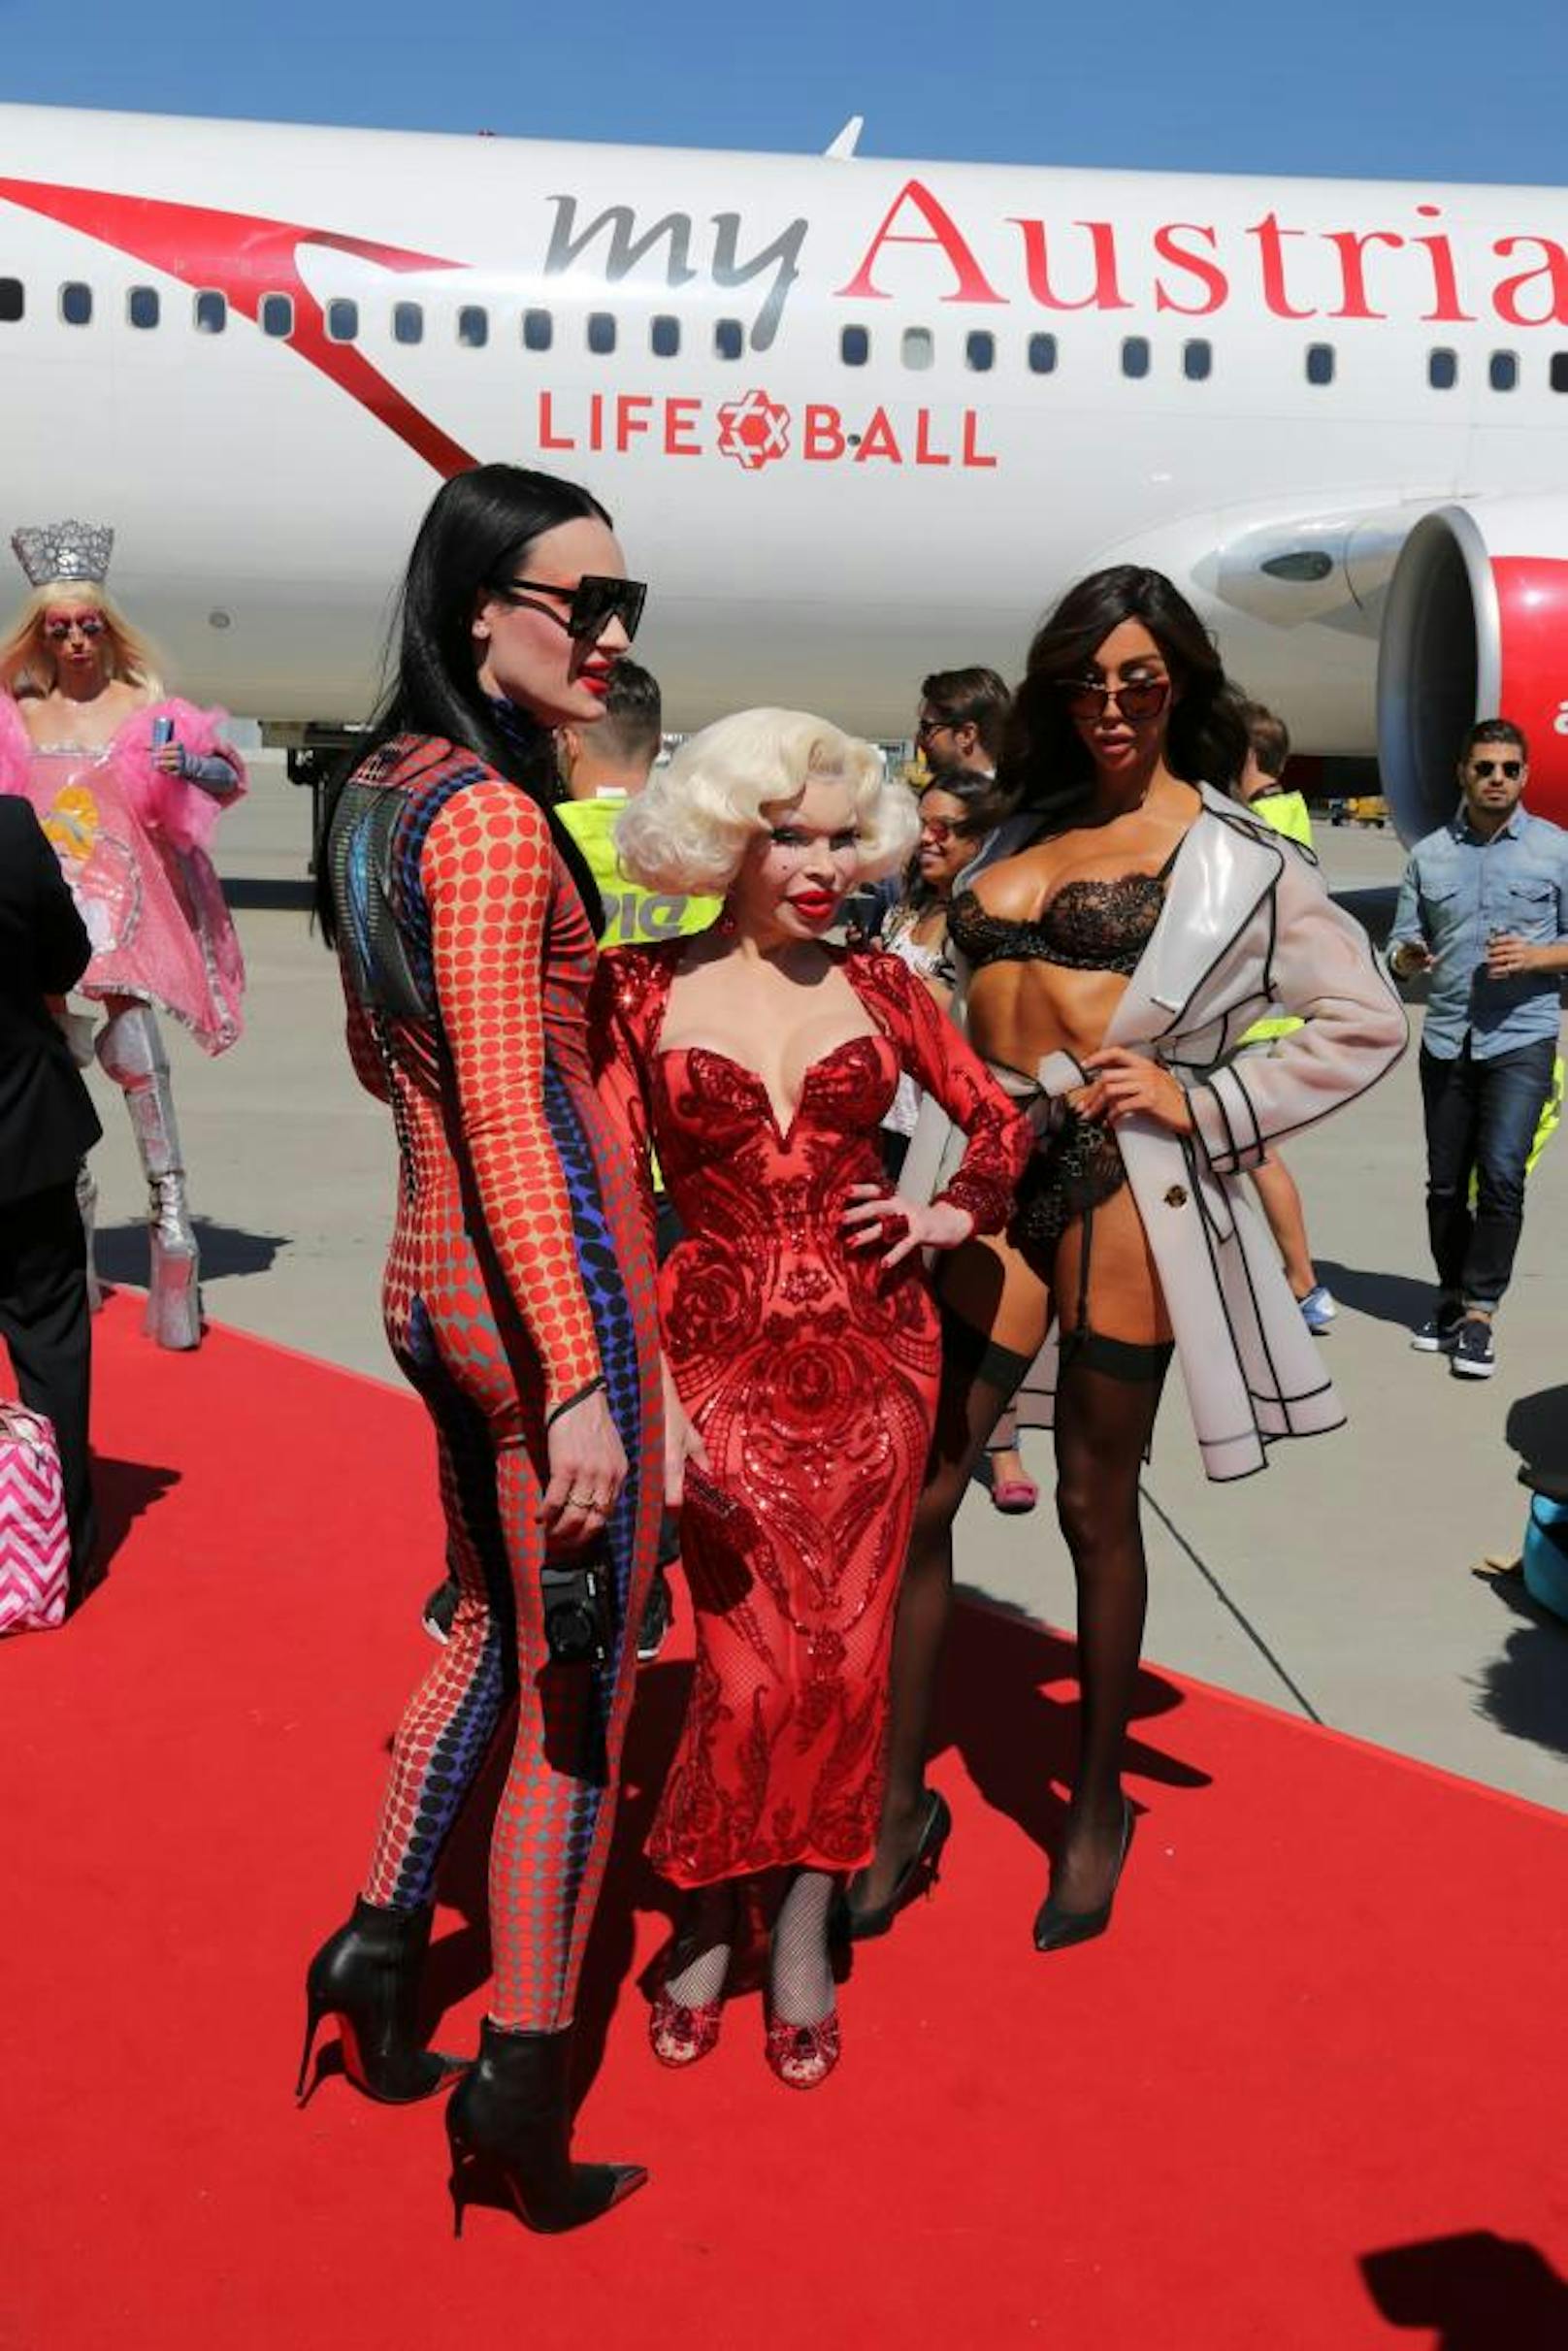 Amanda Lepore (Mitte) bei der Ankunft des Life Ball Fliegers am Flughafen Wien am 9. Juni 2017